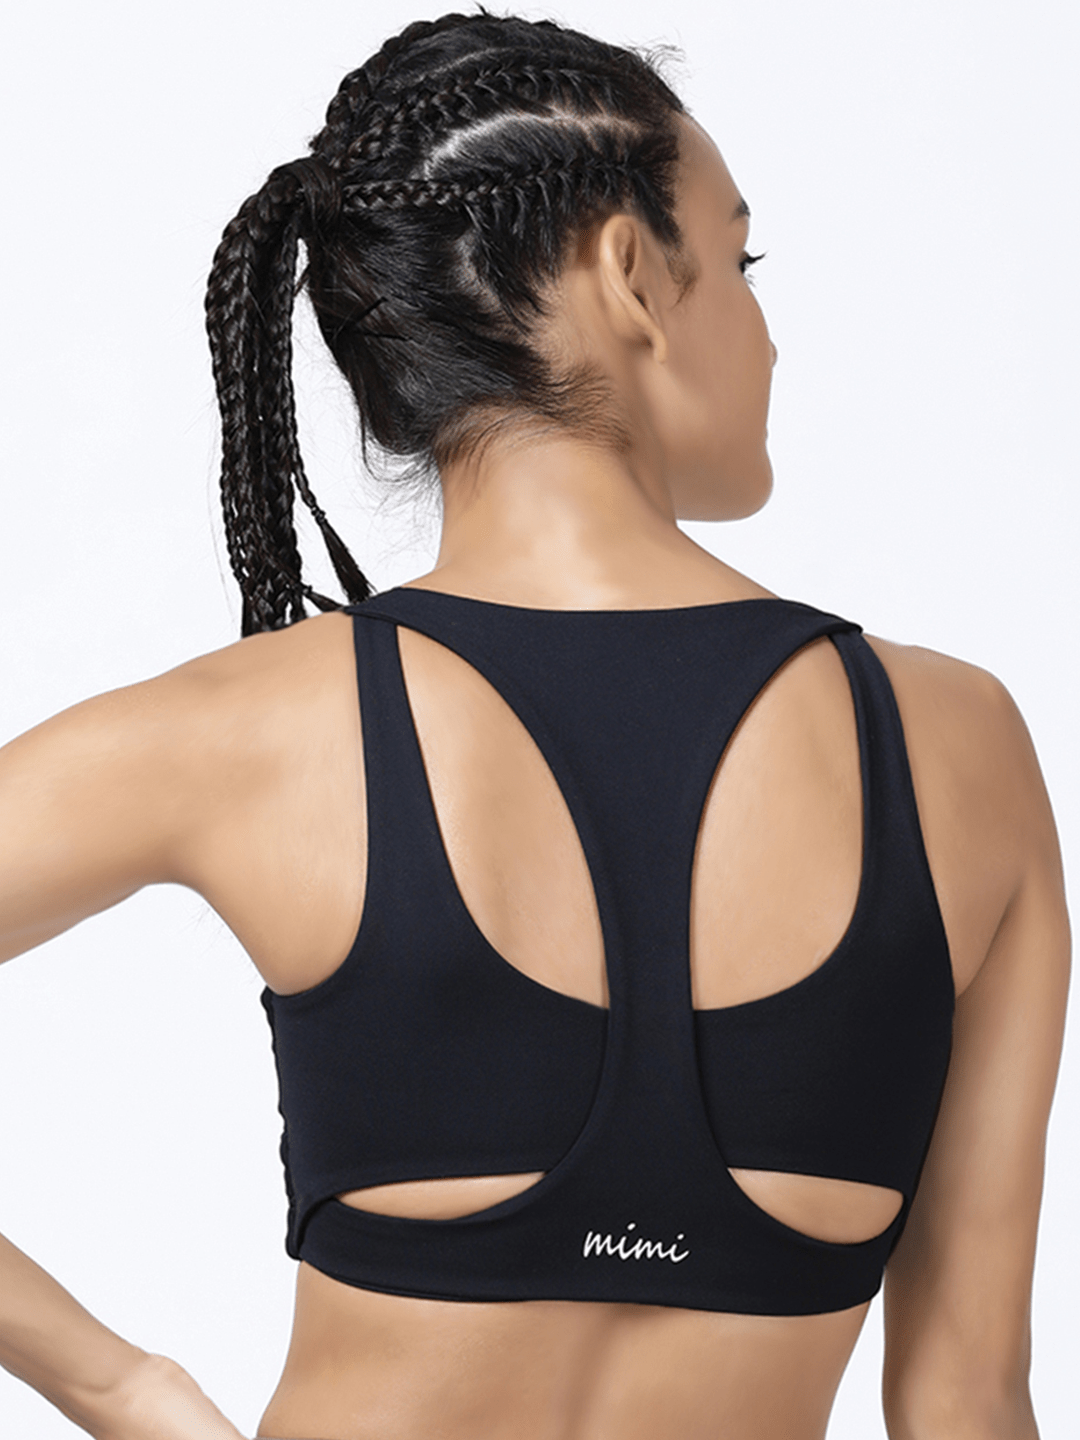 High Support Racer Back Nylon Sports Bra For Women – Black – MICHELLE SALINS